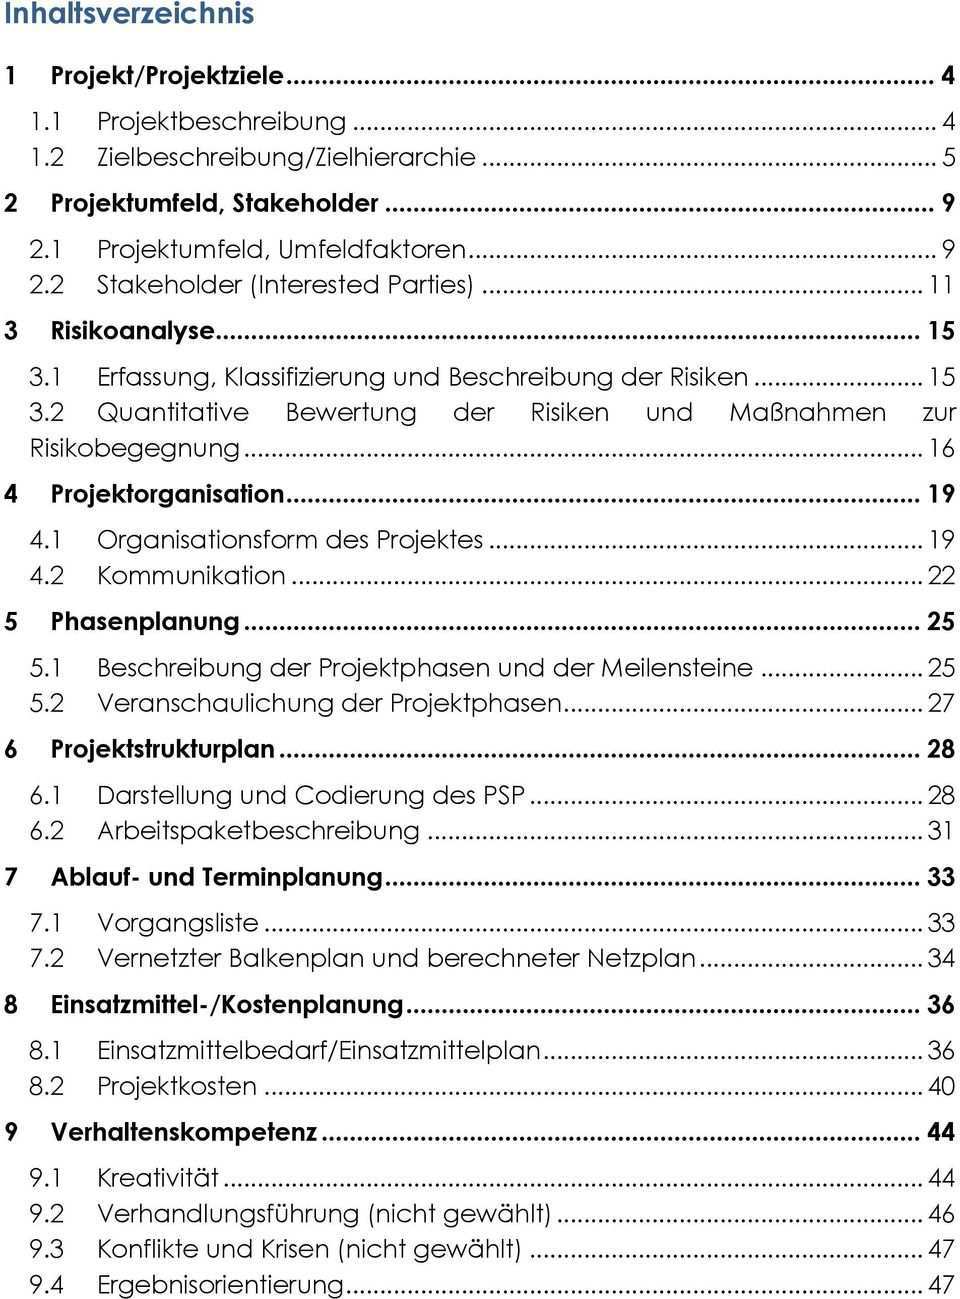 Transfernachweis Zur Zertifizierung Projektmanagement Fachmann Ipma Gpm Pdf Free Download